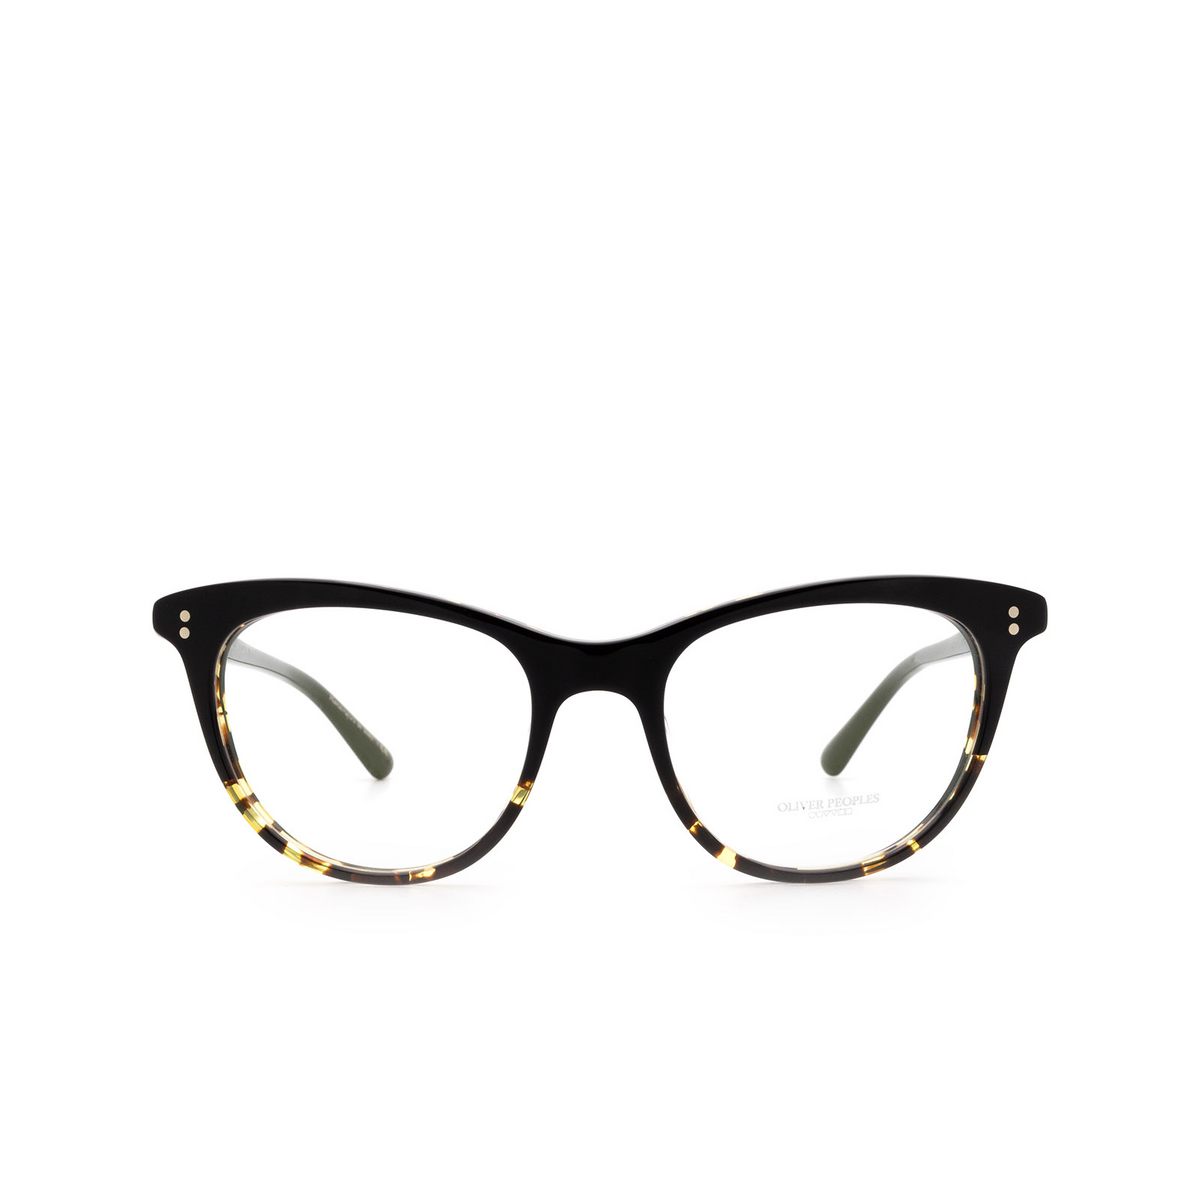 Oliver Peoples JARDINETTE Eyeglasses 1178 - front view